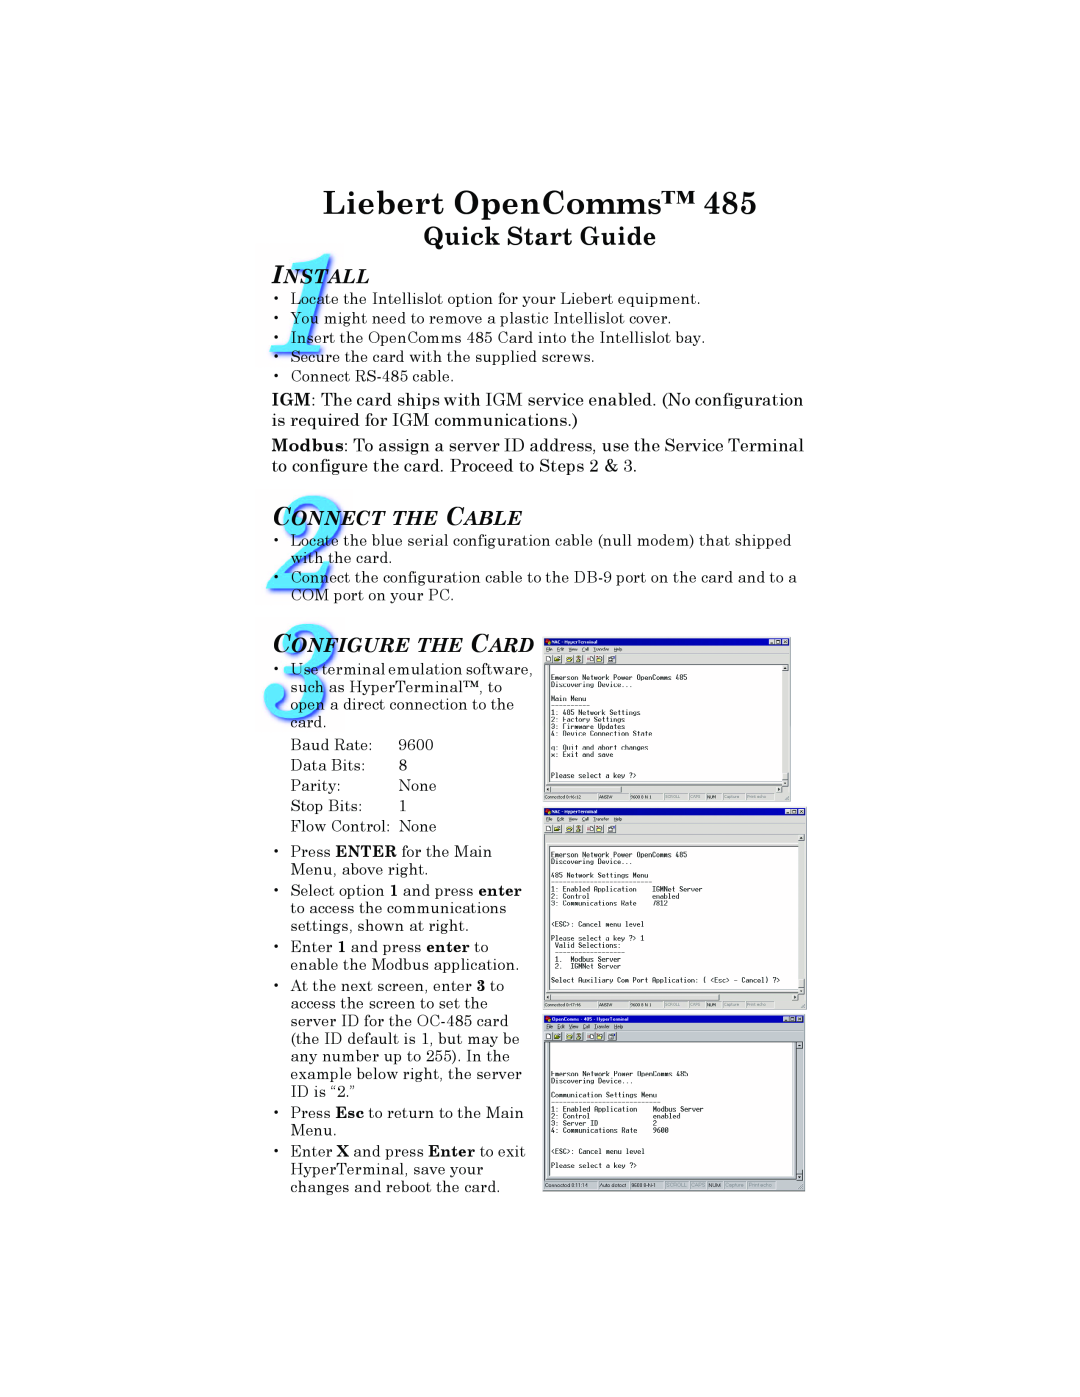 Liebert 485 quick start Liebert OpenComms, Quick Start Guide, Install, Connect The Cable, Configure The Card 